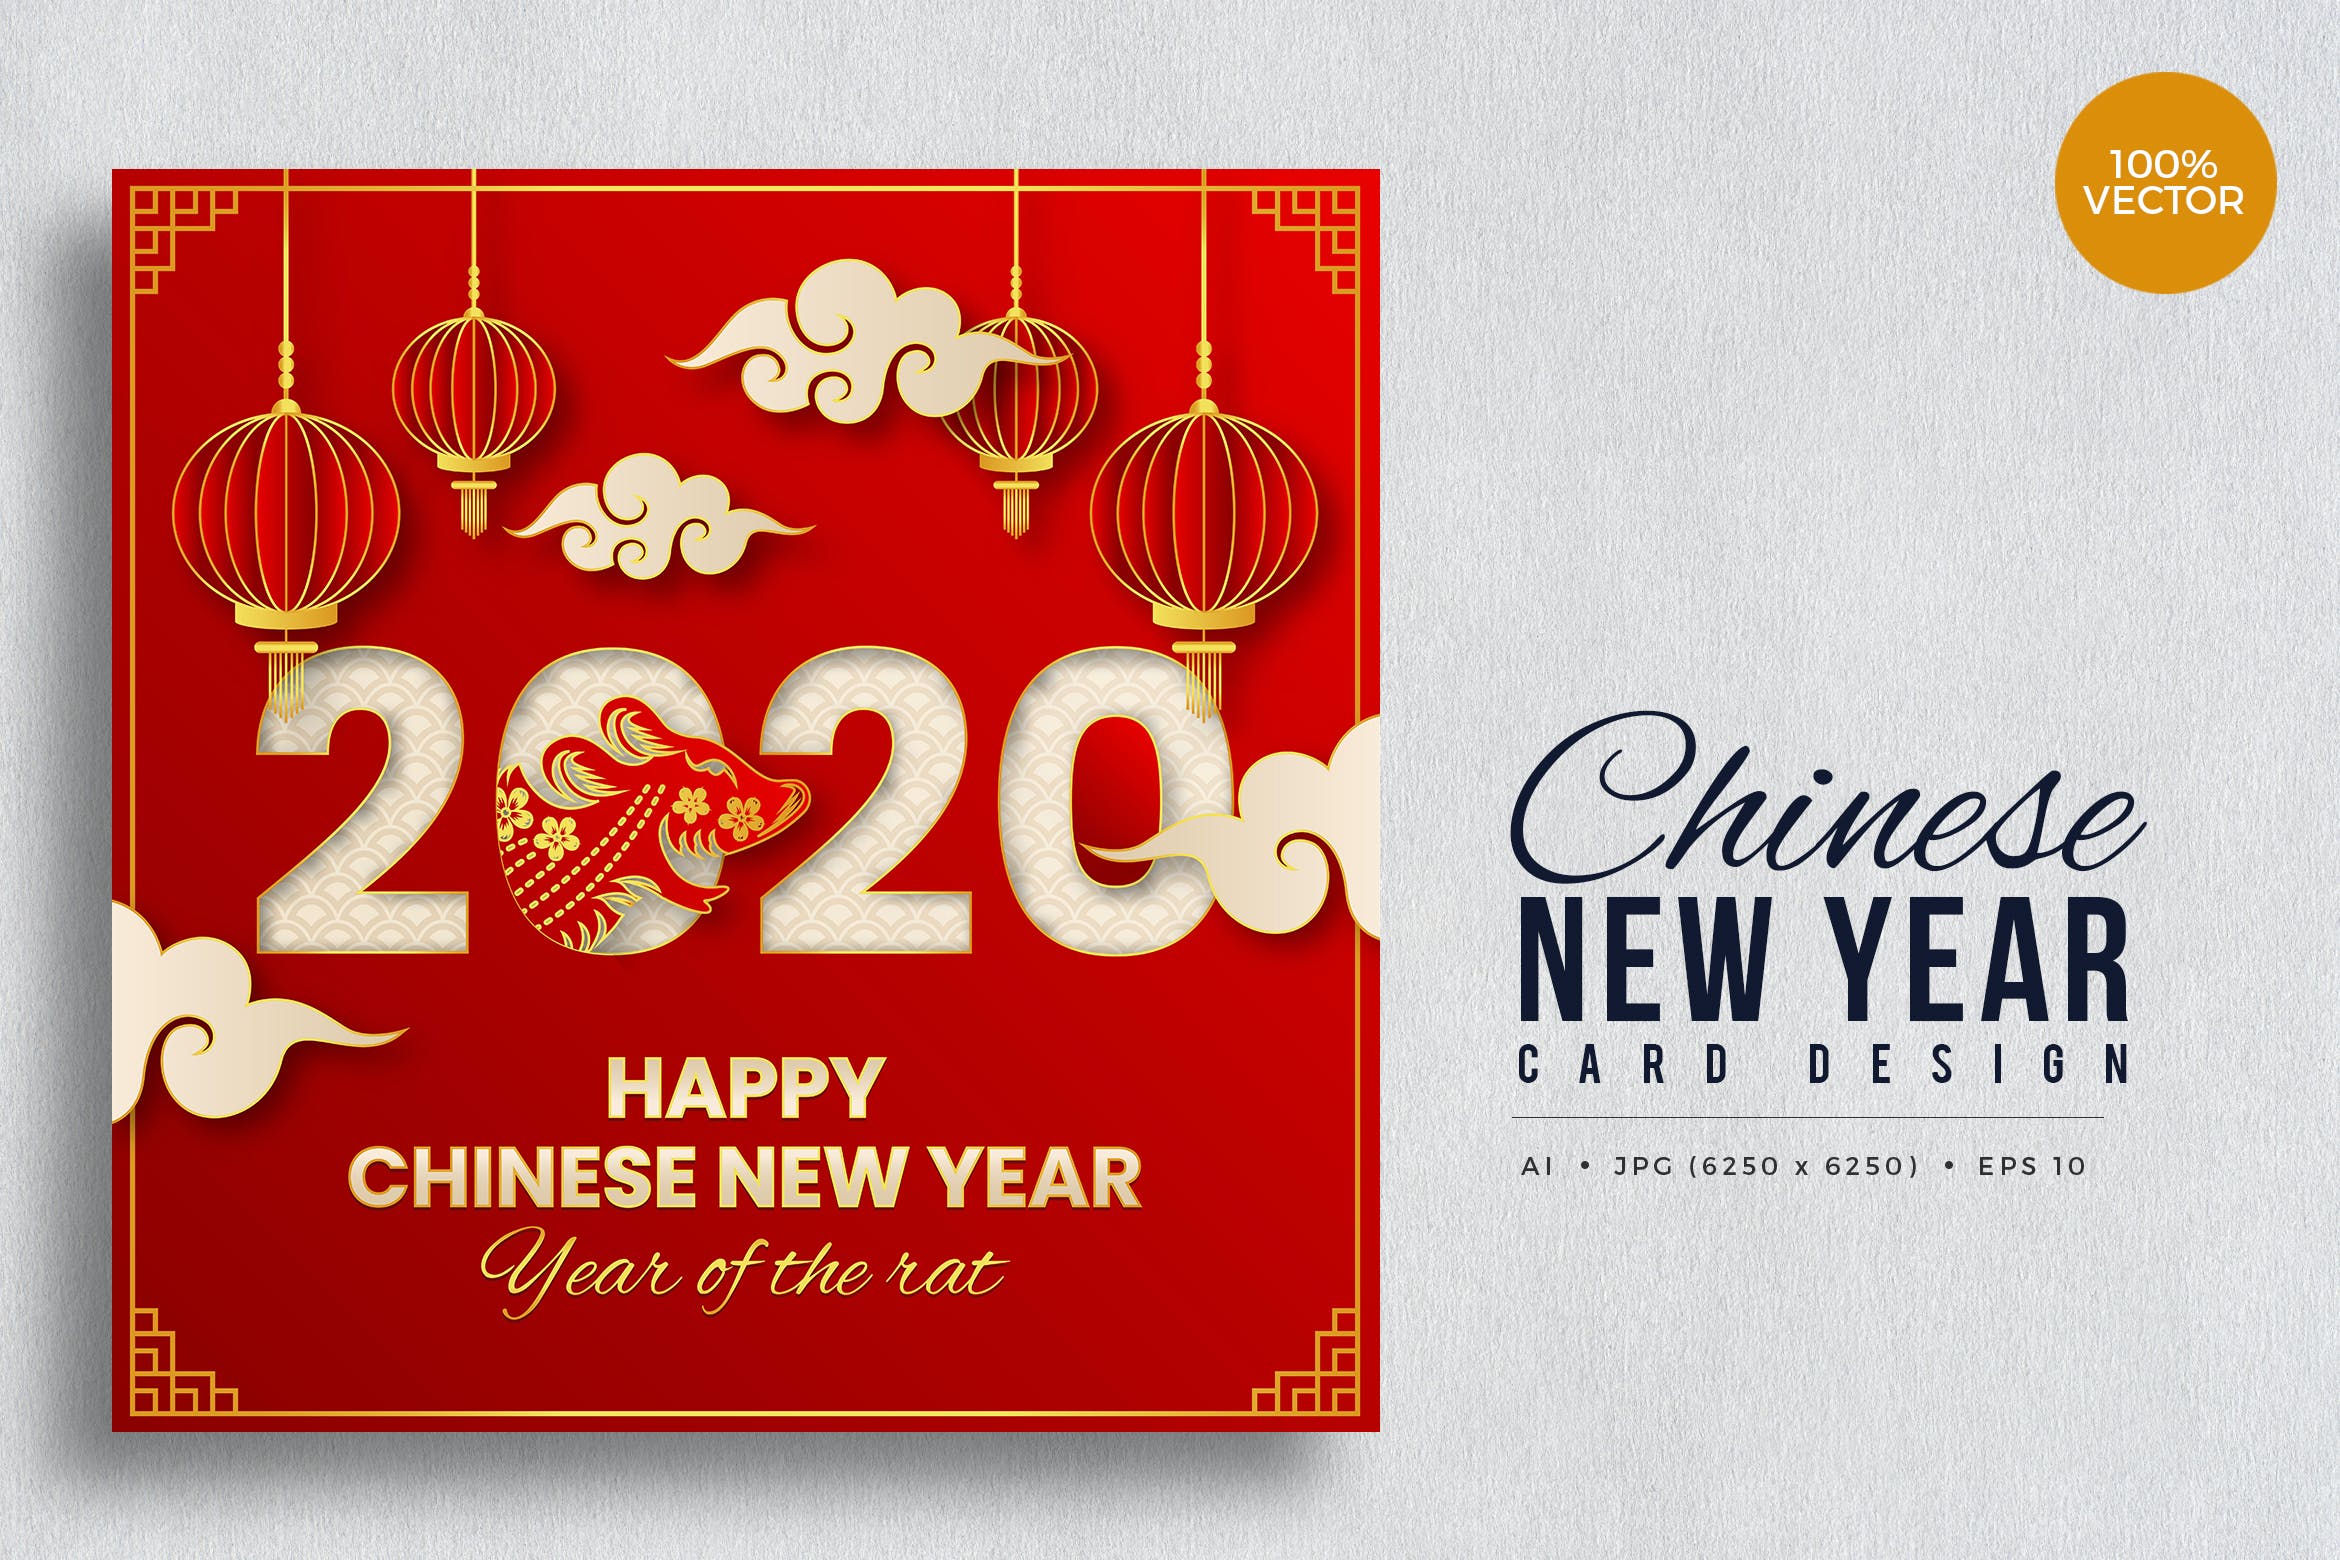 贺卡设计中国农历新年矢量素材v2 Chinese New Year, Rat Year Vector Card Vol.2设计素材模板